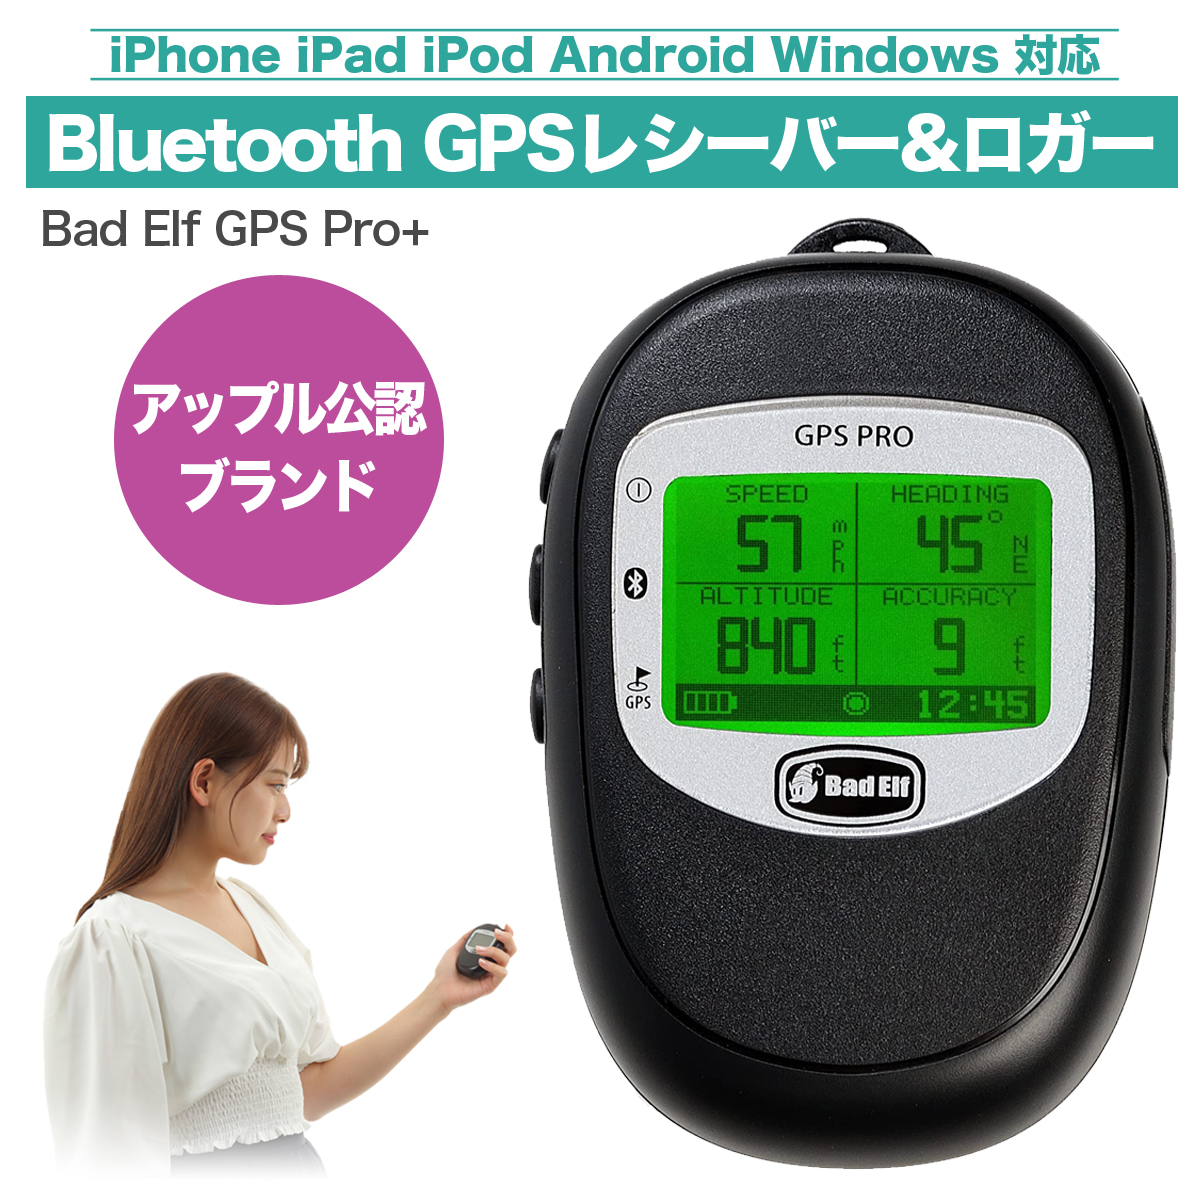 楽天市場 Dual Electronics社製 Gpsレシーバー Xgps150a Universal Bluetooth Gps Receiver アメリカンカルチャーストア